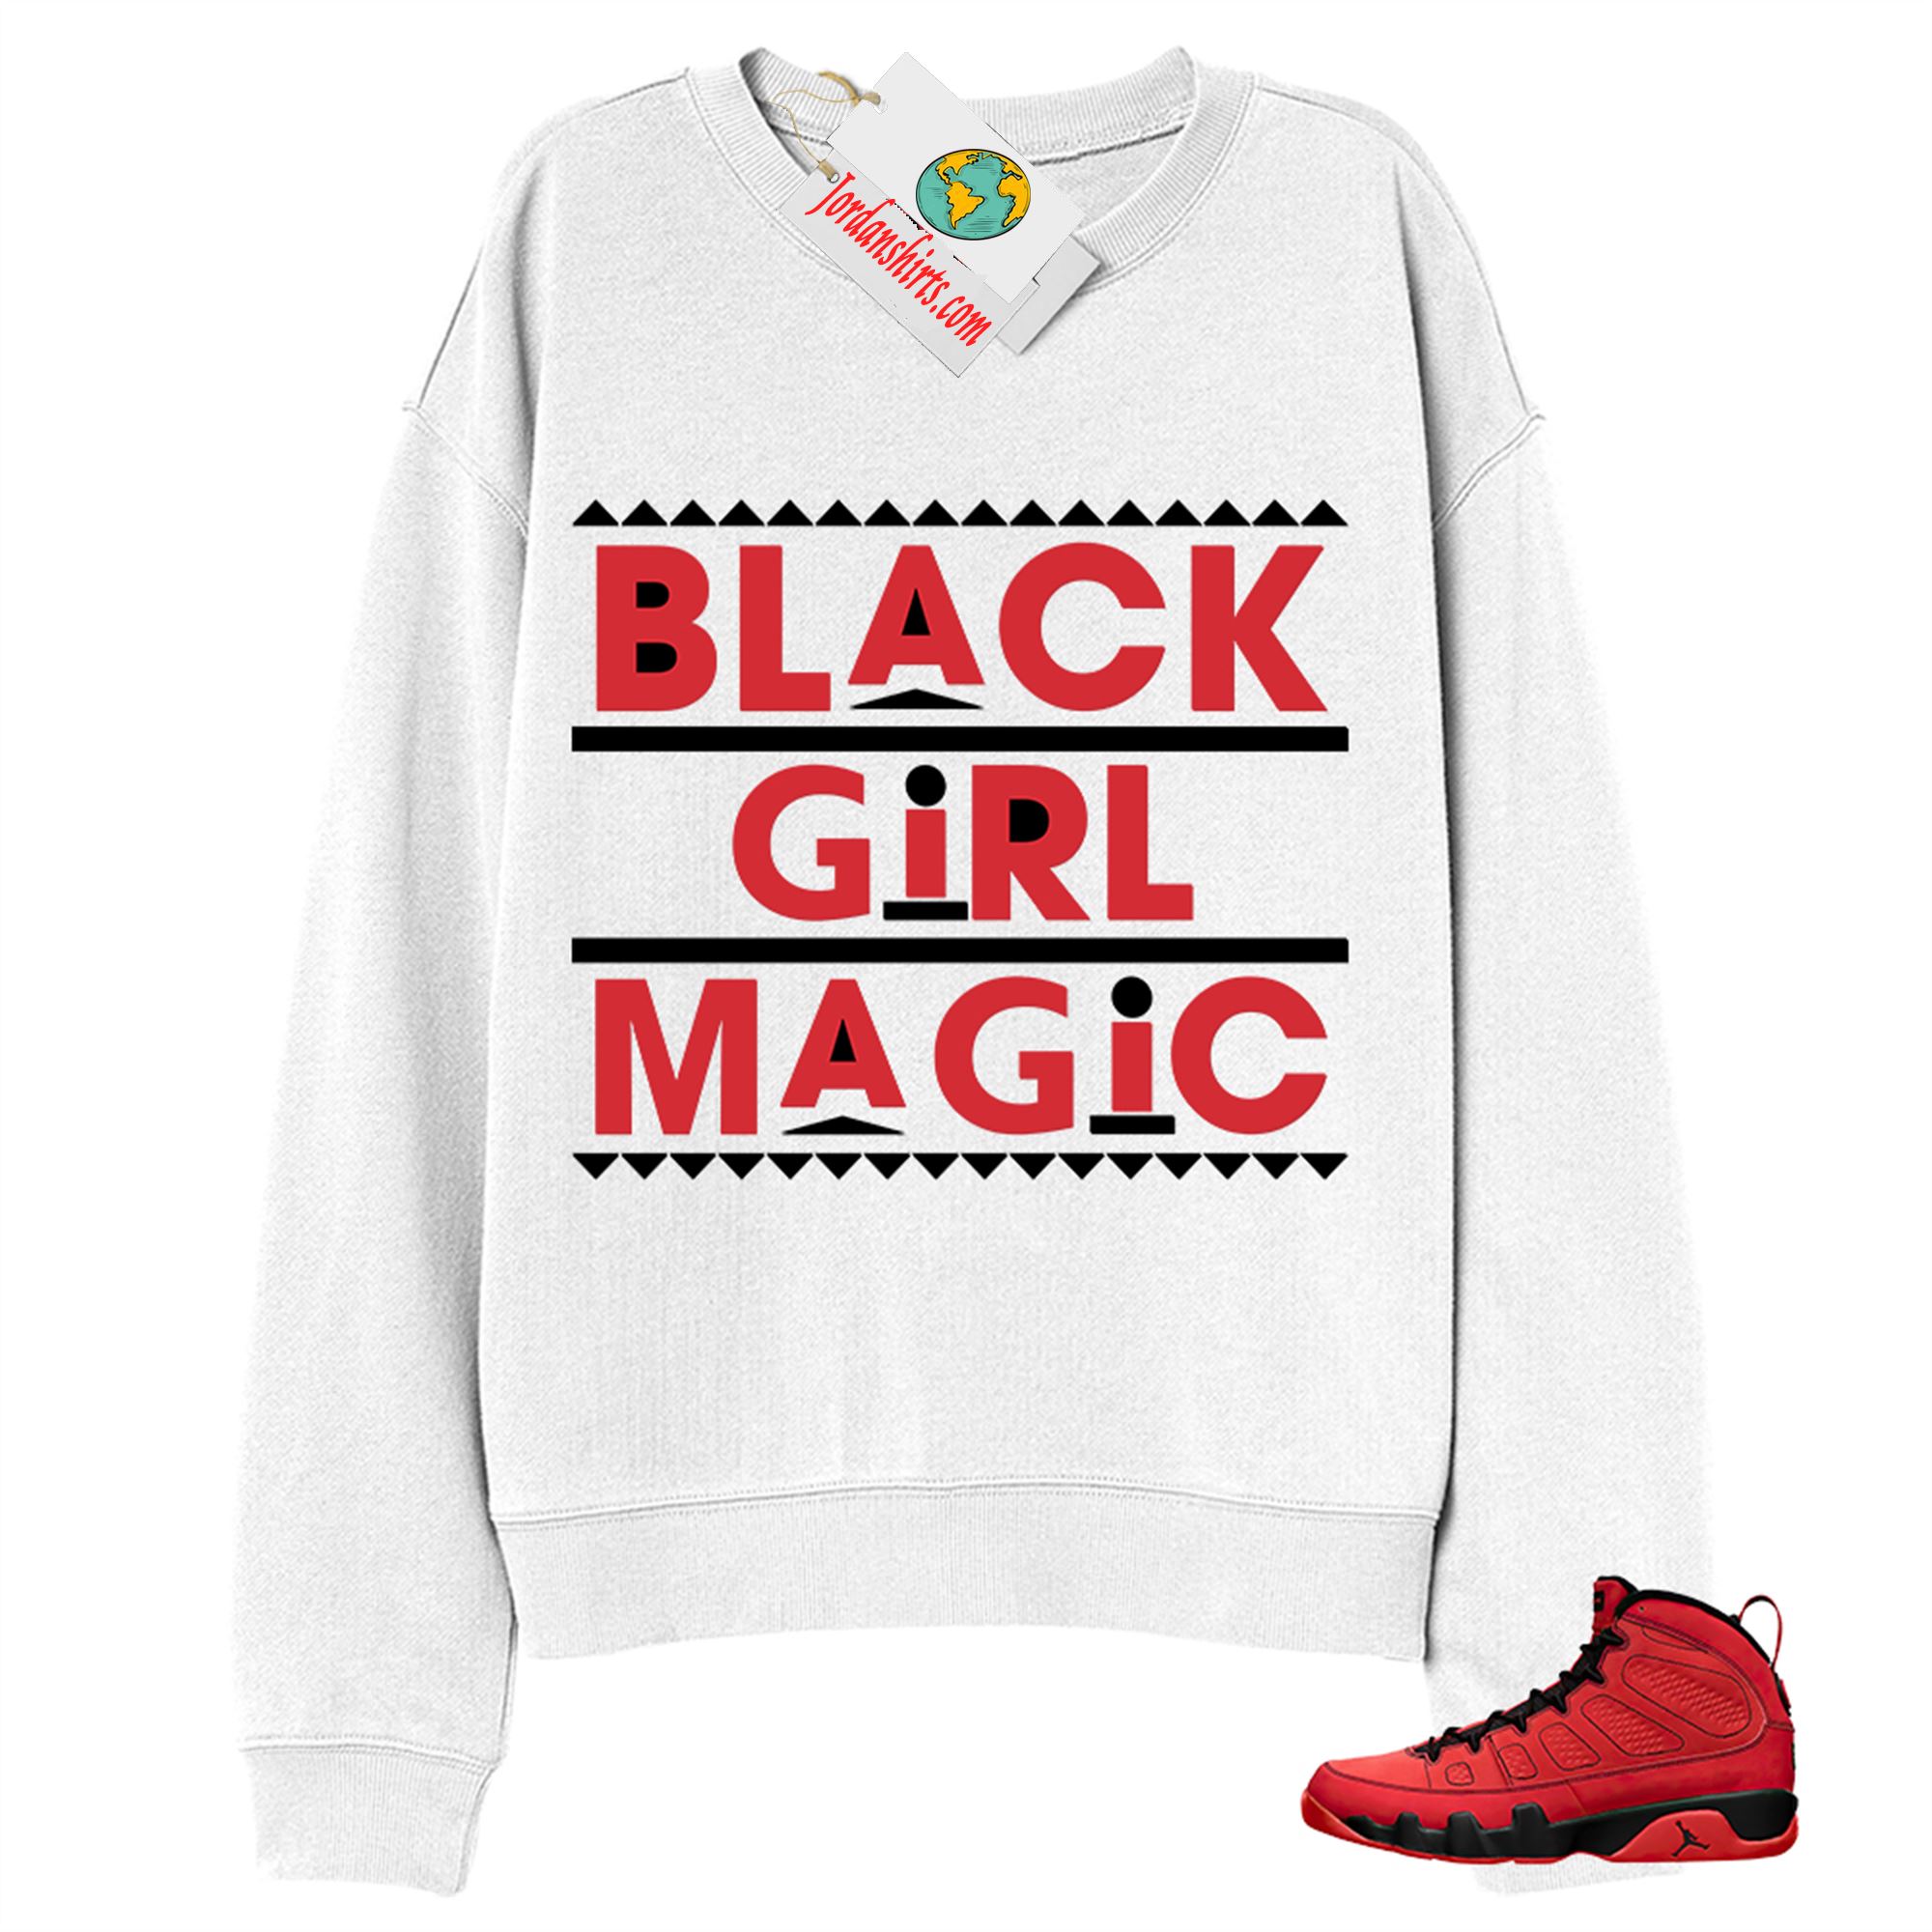 Jordan 9 Sweatshirt, Black Girl Magic White Sweatshirt Air Jordan 9 Chile Red 9s Full Size Up To 5xl